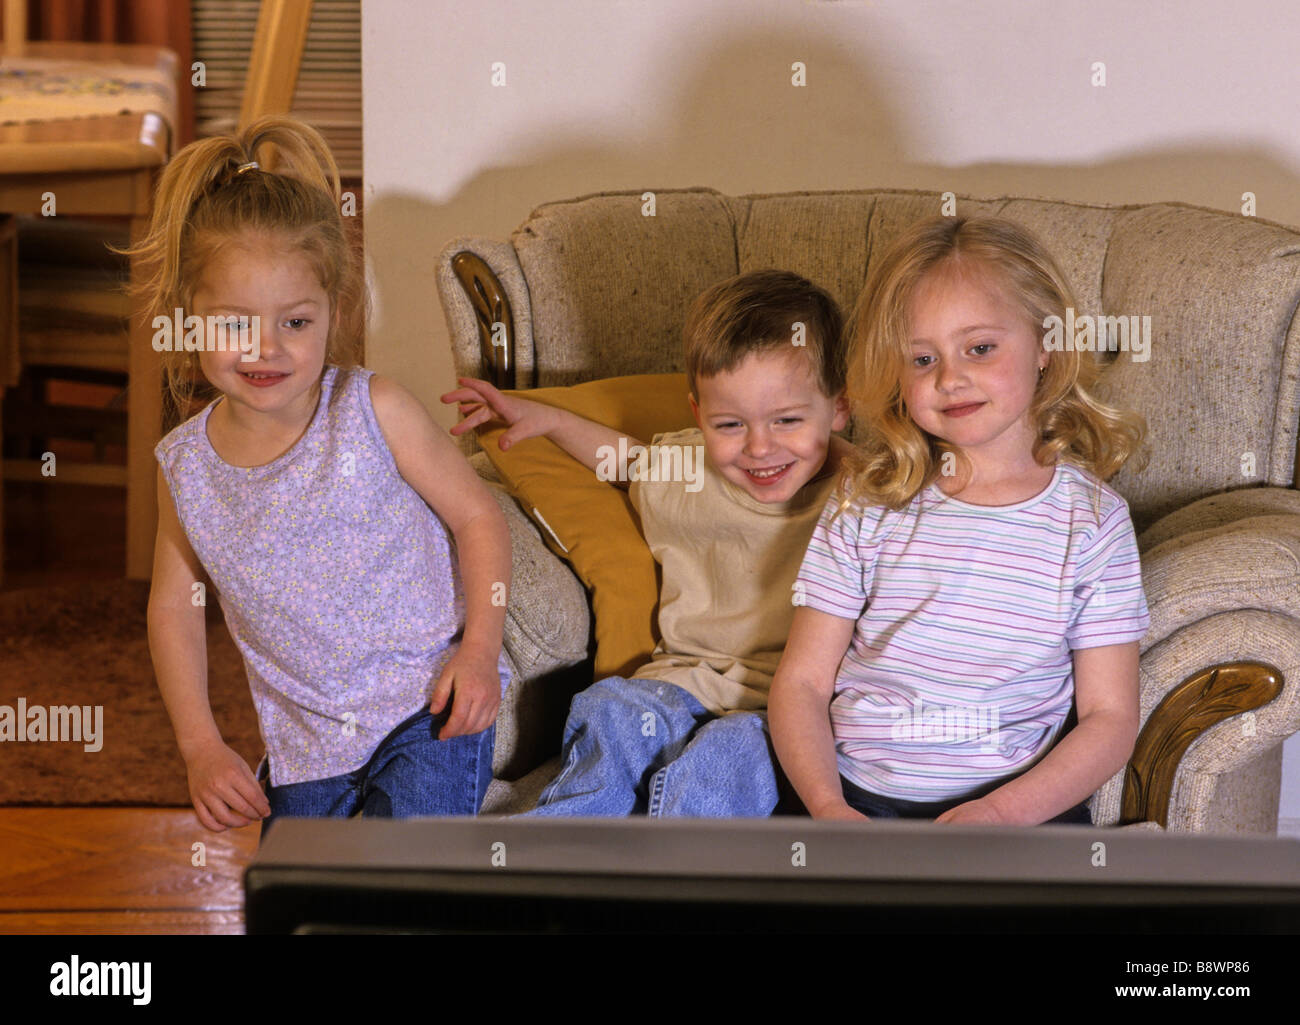 Children watching TV Stock Photo